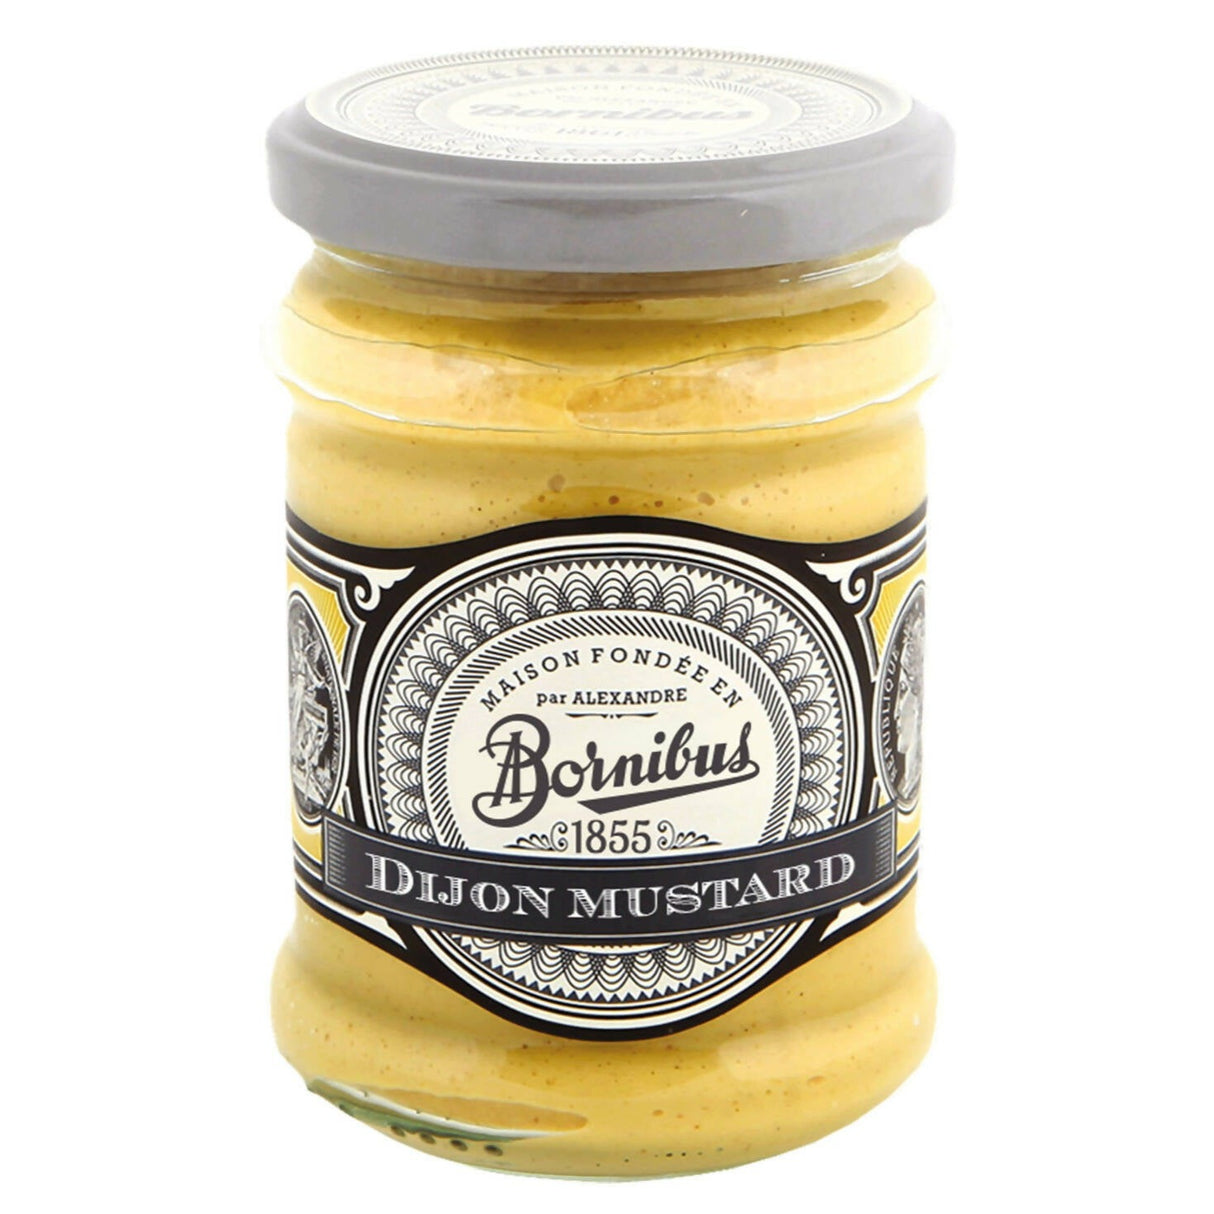 Bornibus Dijon Mustard